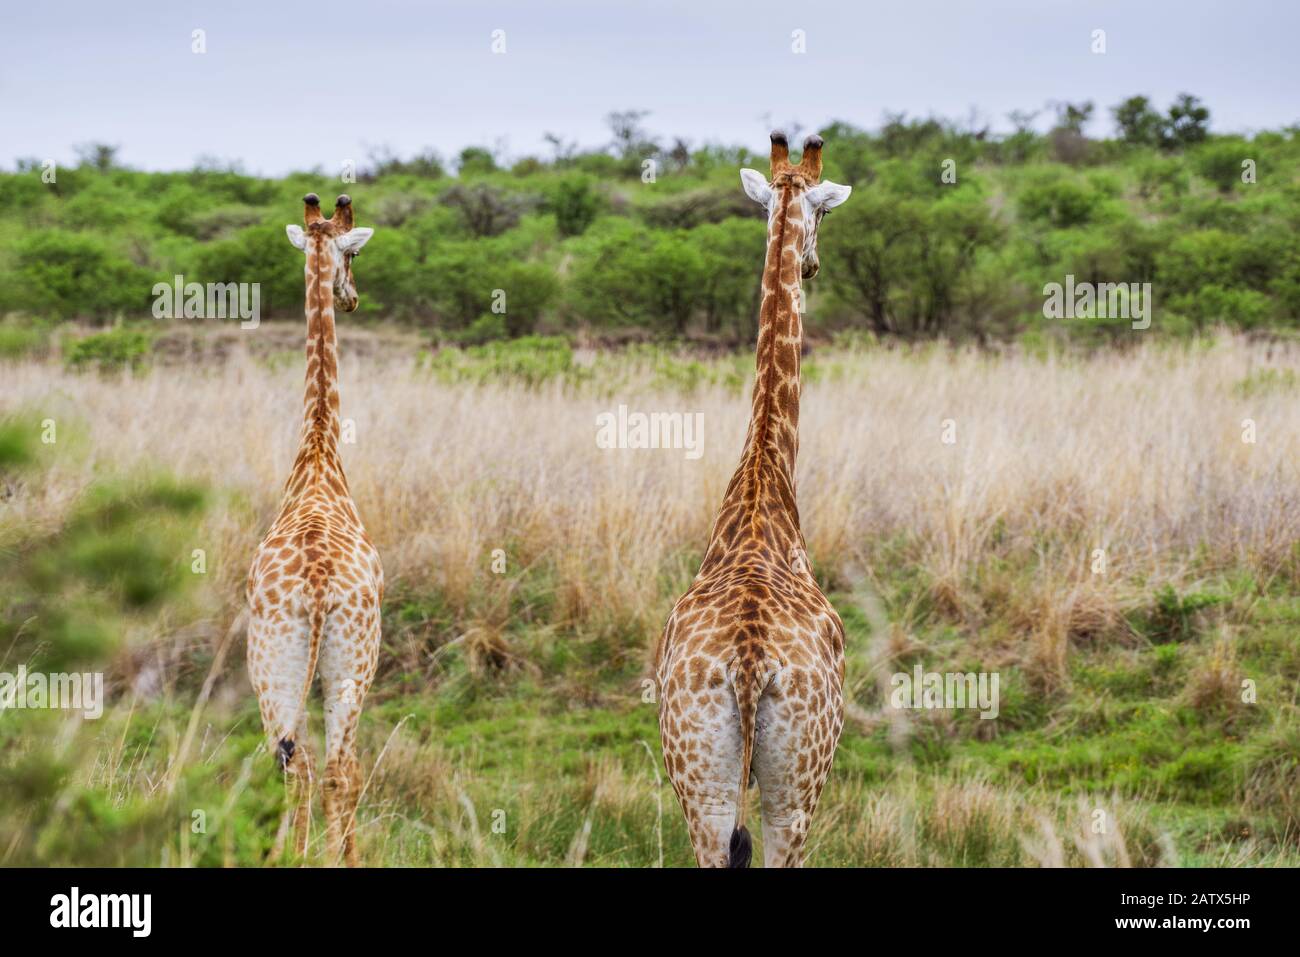 Deux girafes s'élevant au-dessus des prairies environnantes dans la Réserve de gibier privée de Nambiti (Kwazulu Natal, Afrique du Sud) Banque D'Images